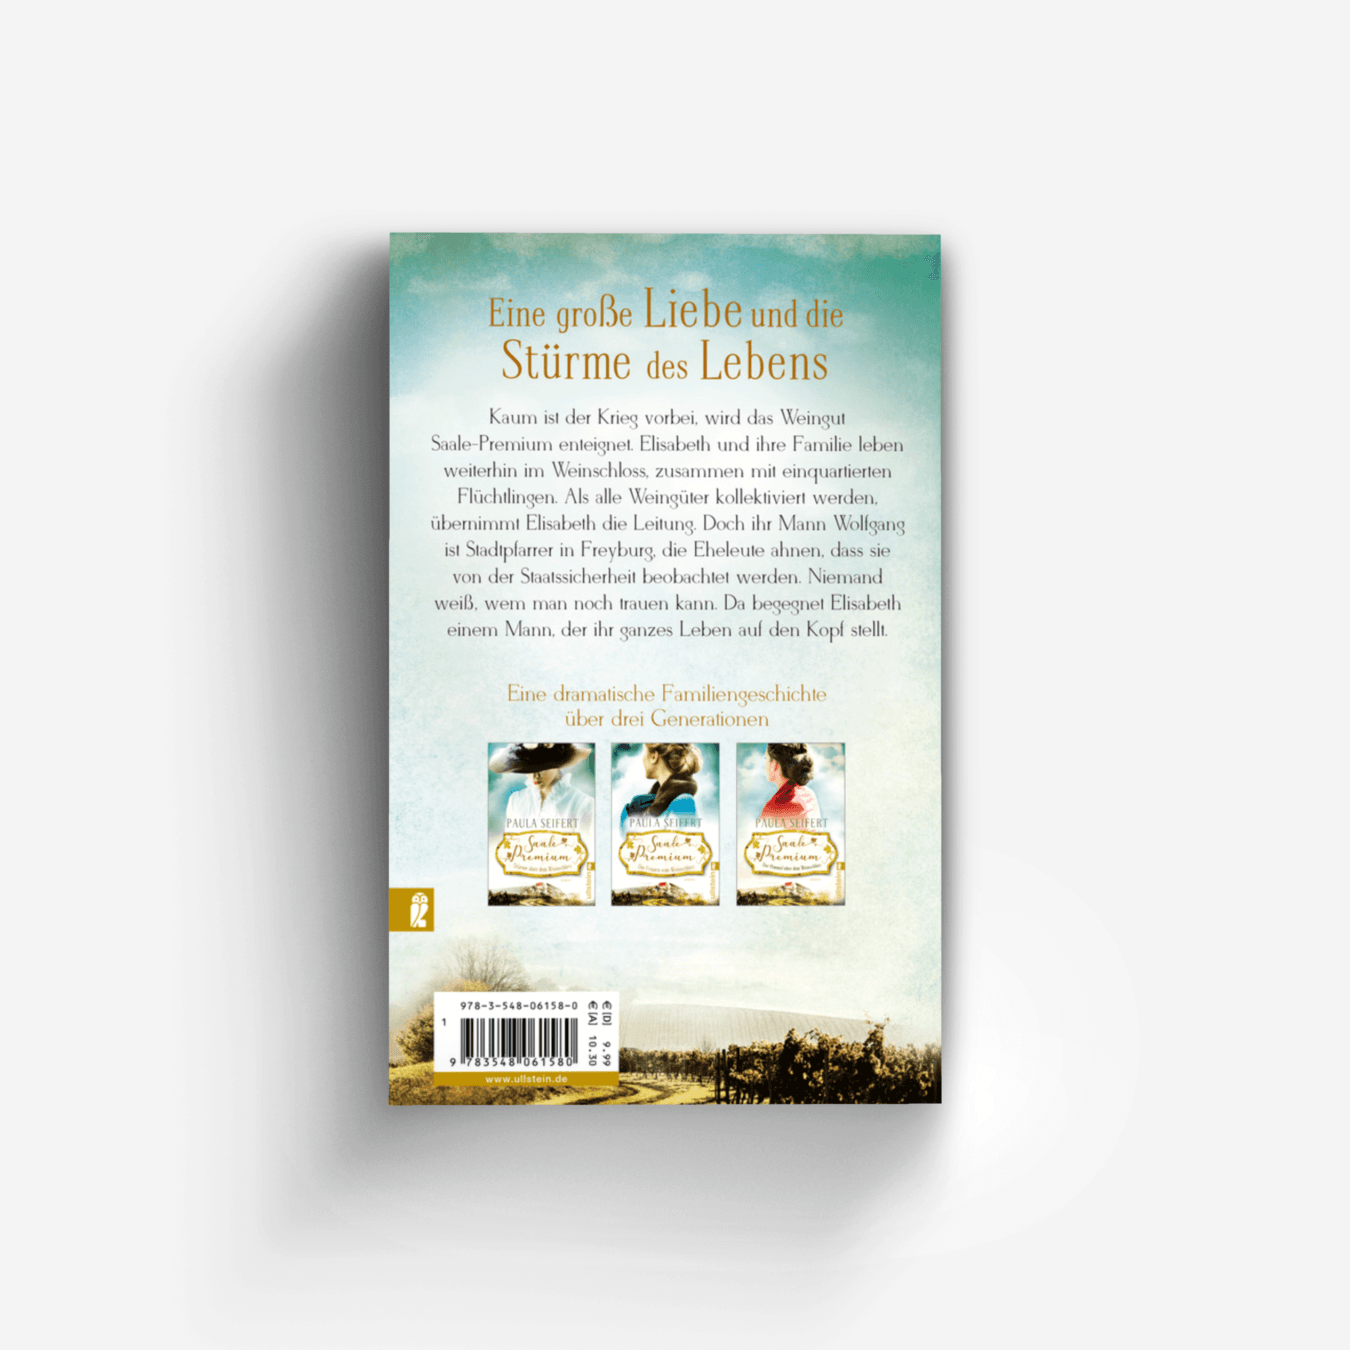 Buchcover von Saale Premium - Der Himmel über dem Weinschloss (Die Weinschloss-Saga 3)